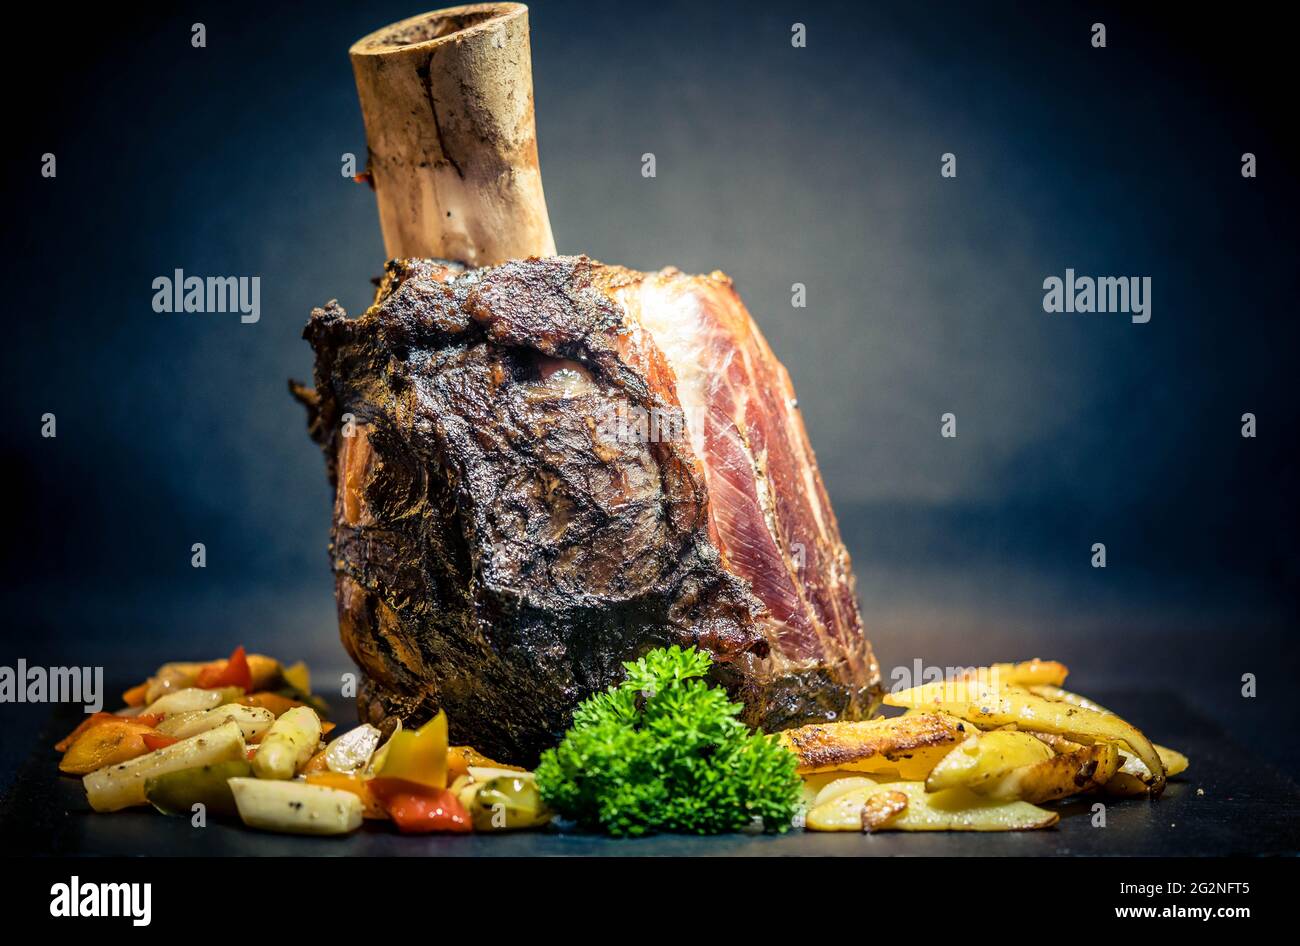 Beef Hammer - ein Topf Braten aus dem Unterschenkel einer Kuh mit Gemüse  Stockfotografie - Alamy